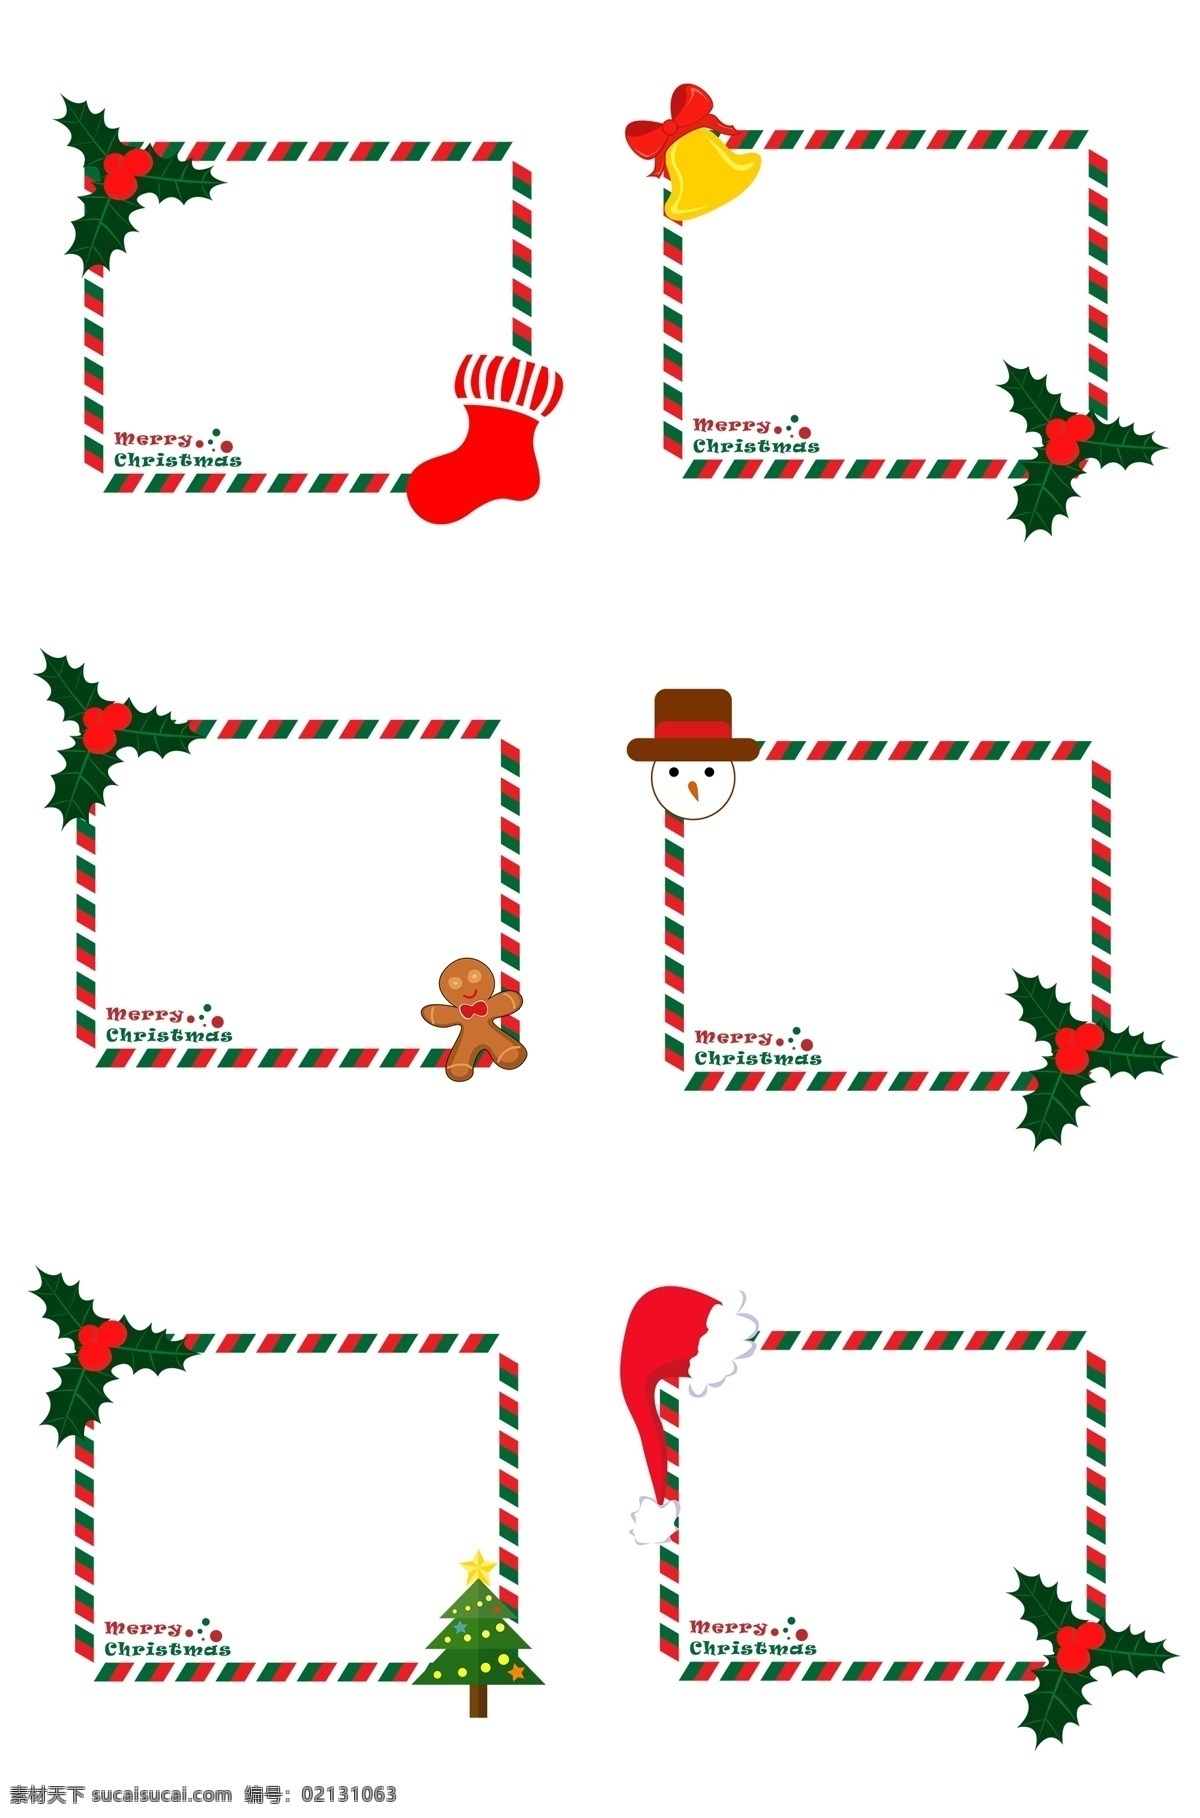 圣诞节 圣诞 元素 贺卡 边框 组 圣诞夜 红袜子 圣诞铃铛 姜饼人 雪人 圣诞树 圣诞帽 卡通插画风格